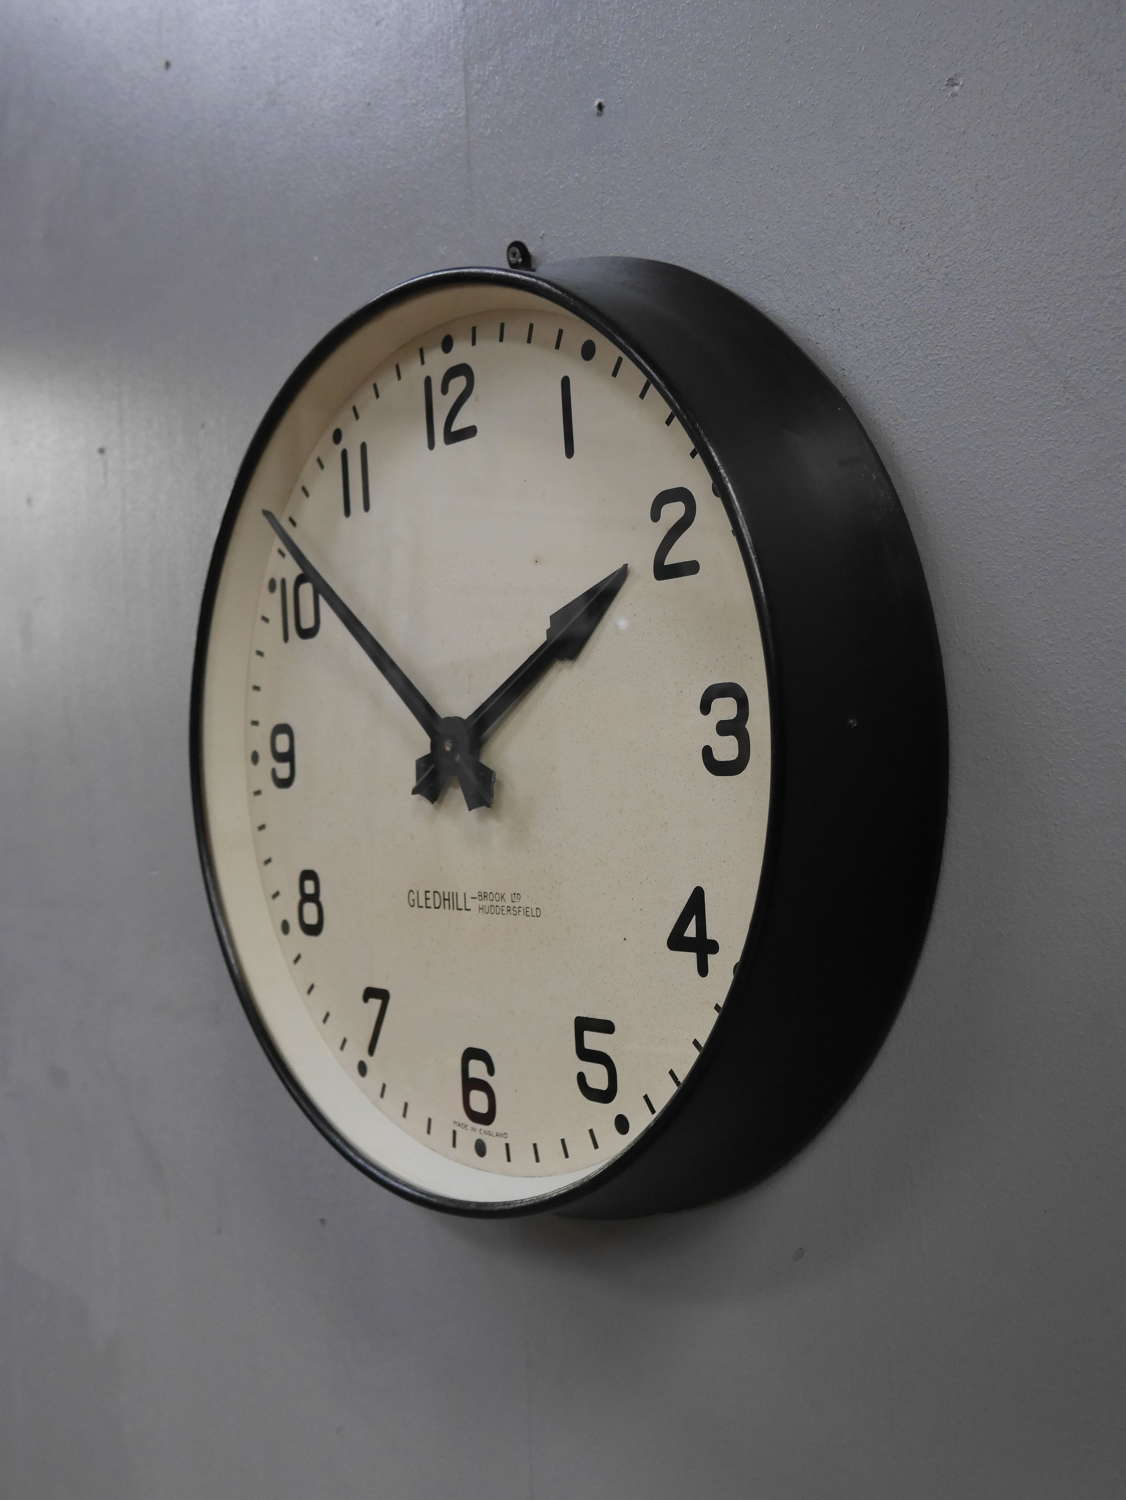 Gents Factory Clock